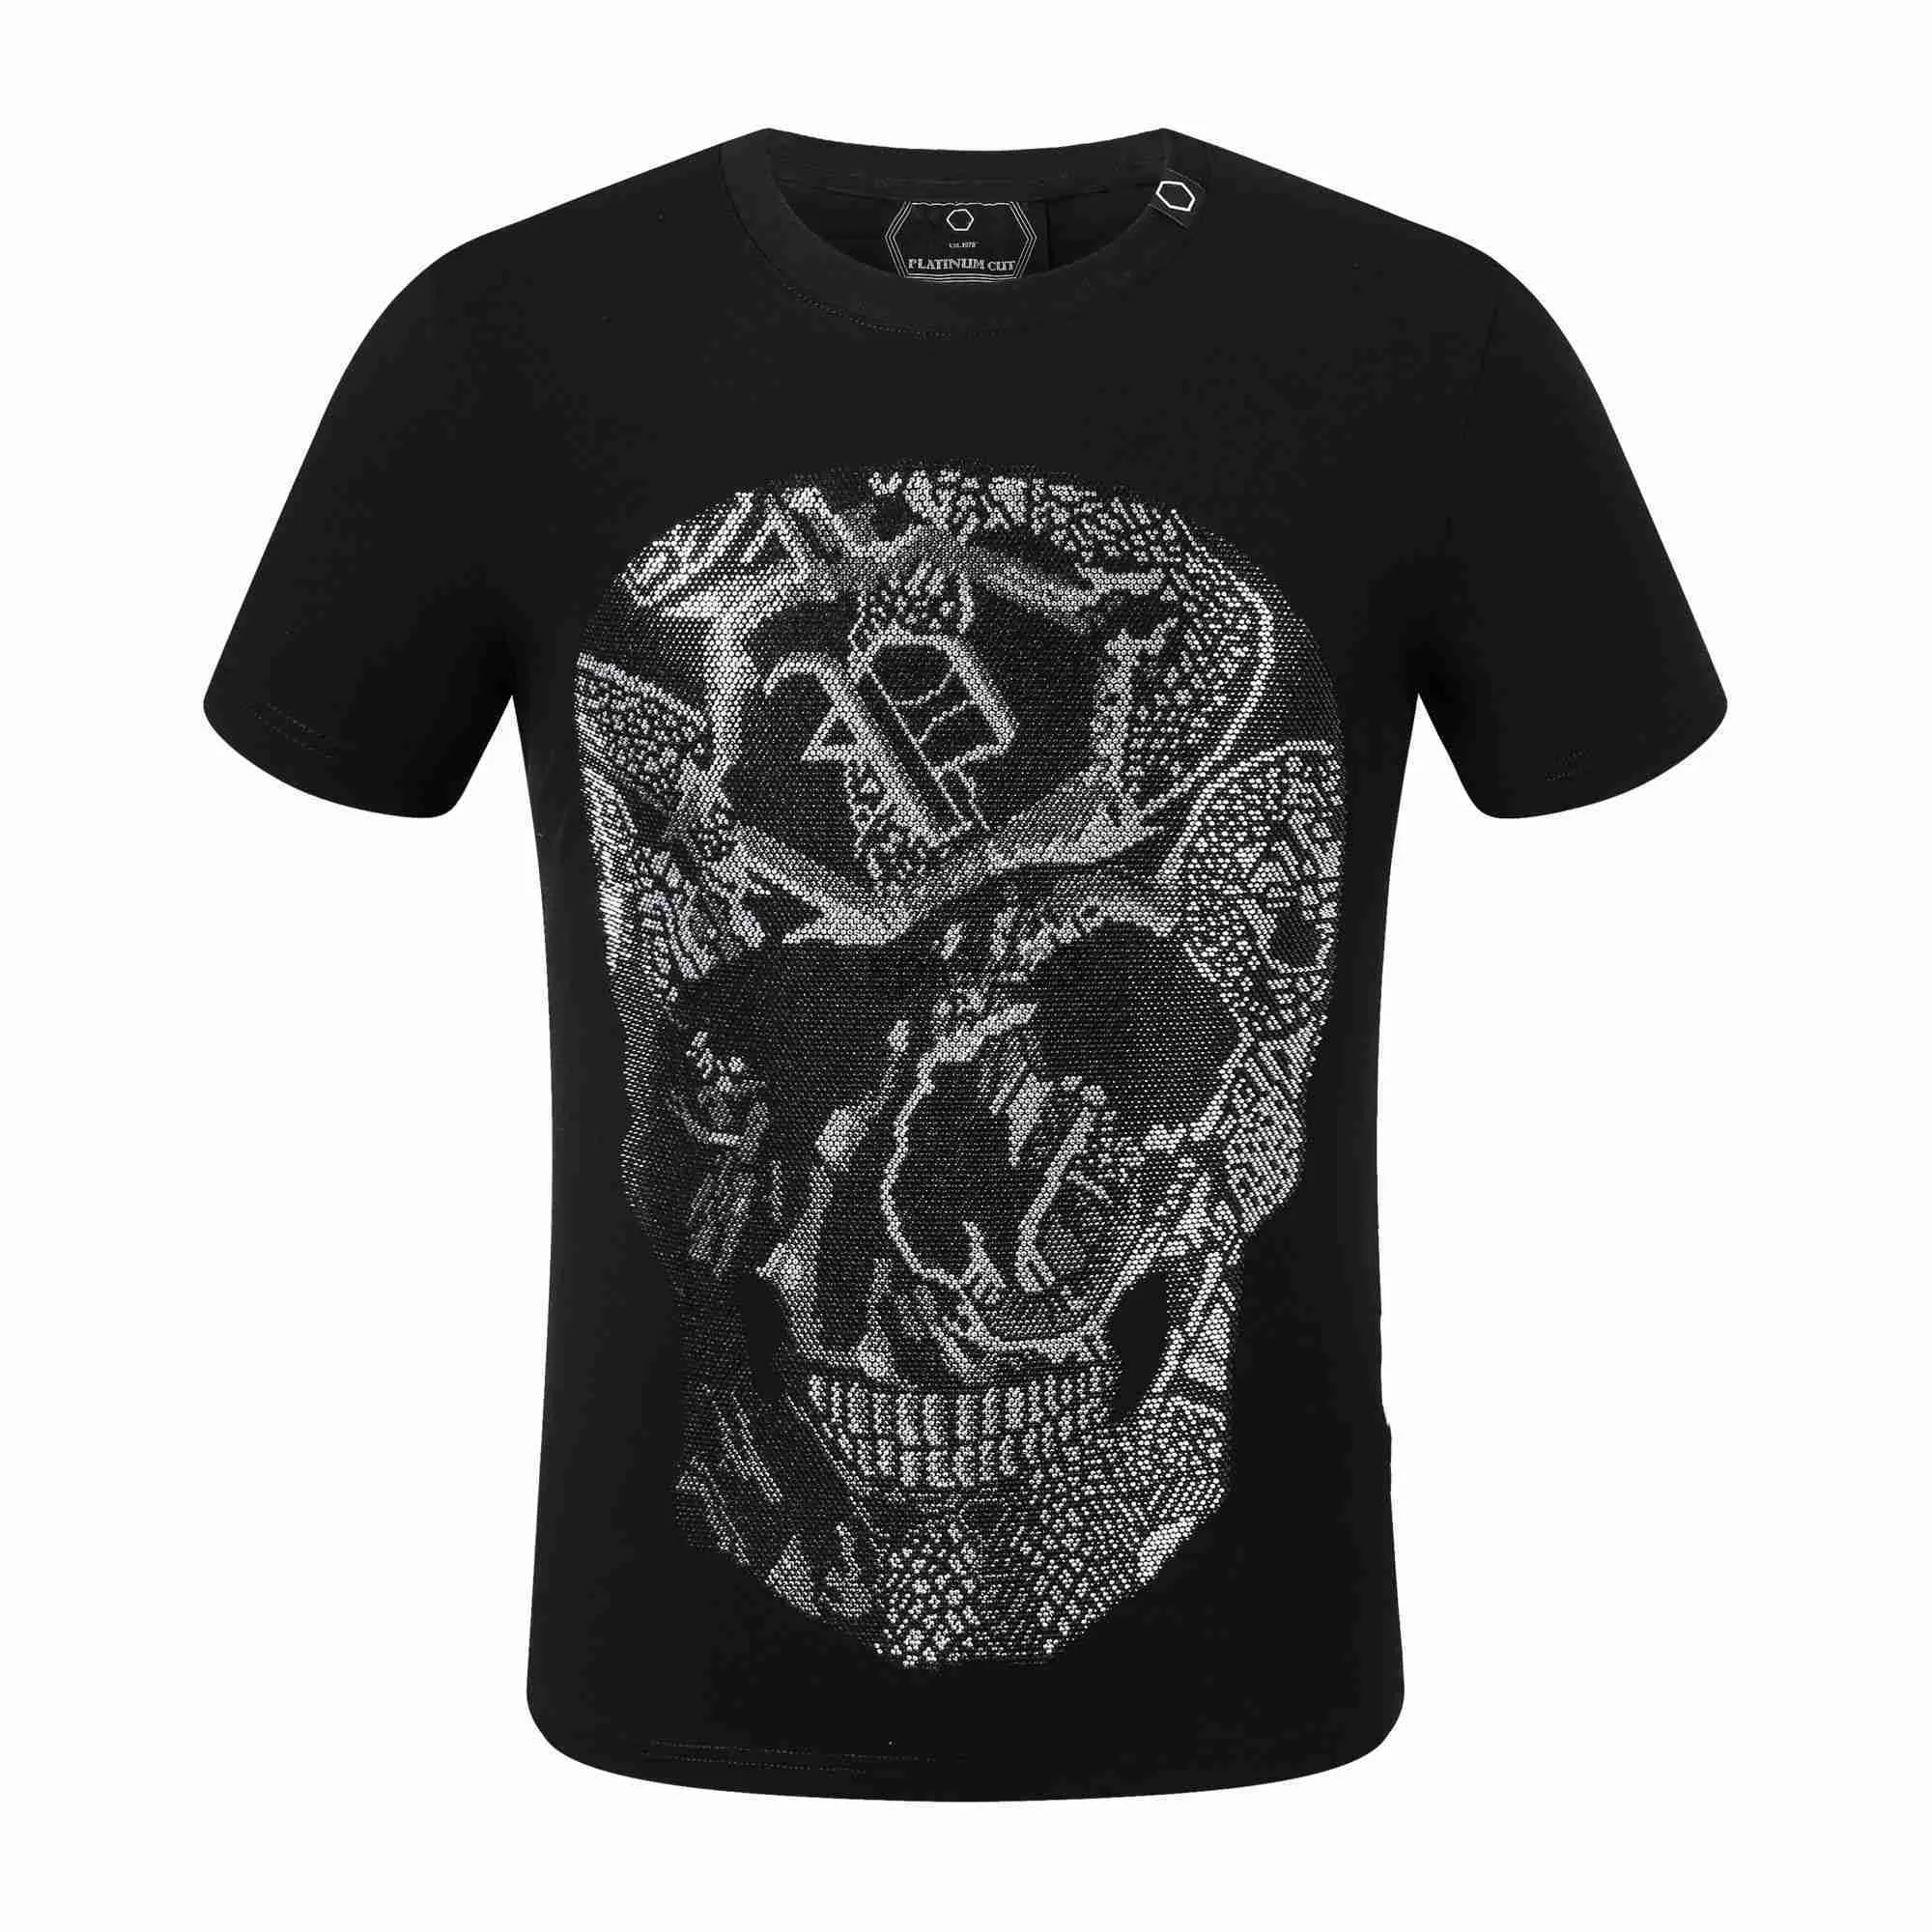 Yeni Plein-Brand T-Shirt Kafatasları Kısa Kollu Tees PP Katil Oyuncak Ayı Tops Plaj Yaz Tarzı Erkek Siyah Desen Partisi Tişört Pp2018 31G3 31G3